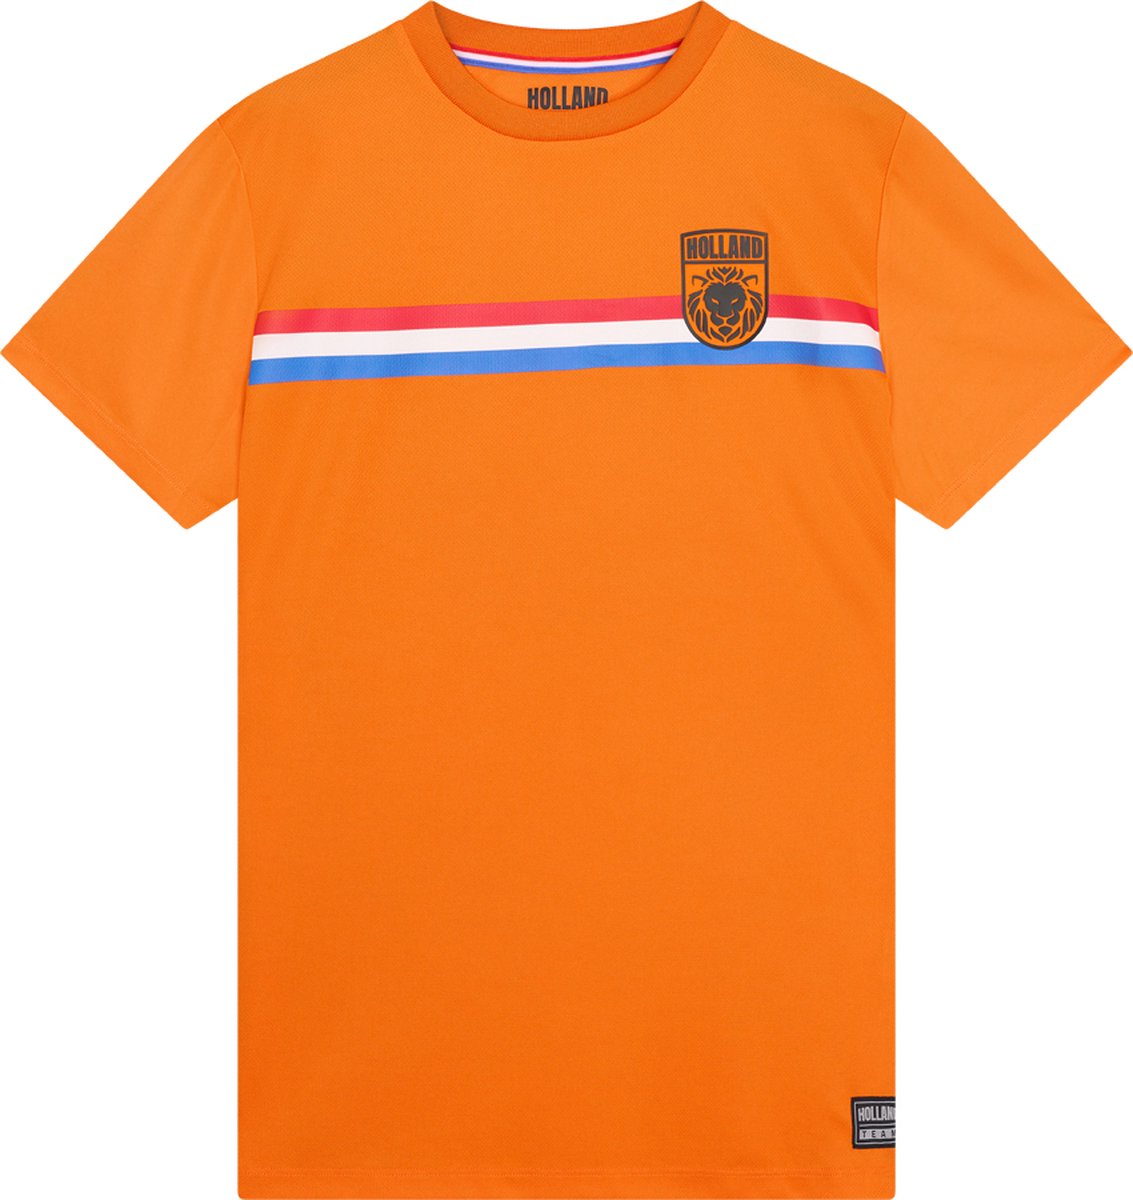 Holland voetbalshirt heren - Sportshirt heren - Oranje shirt heren - maat XXL